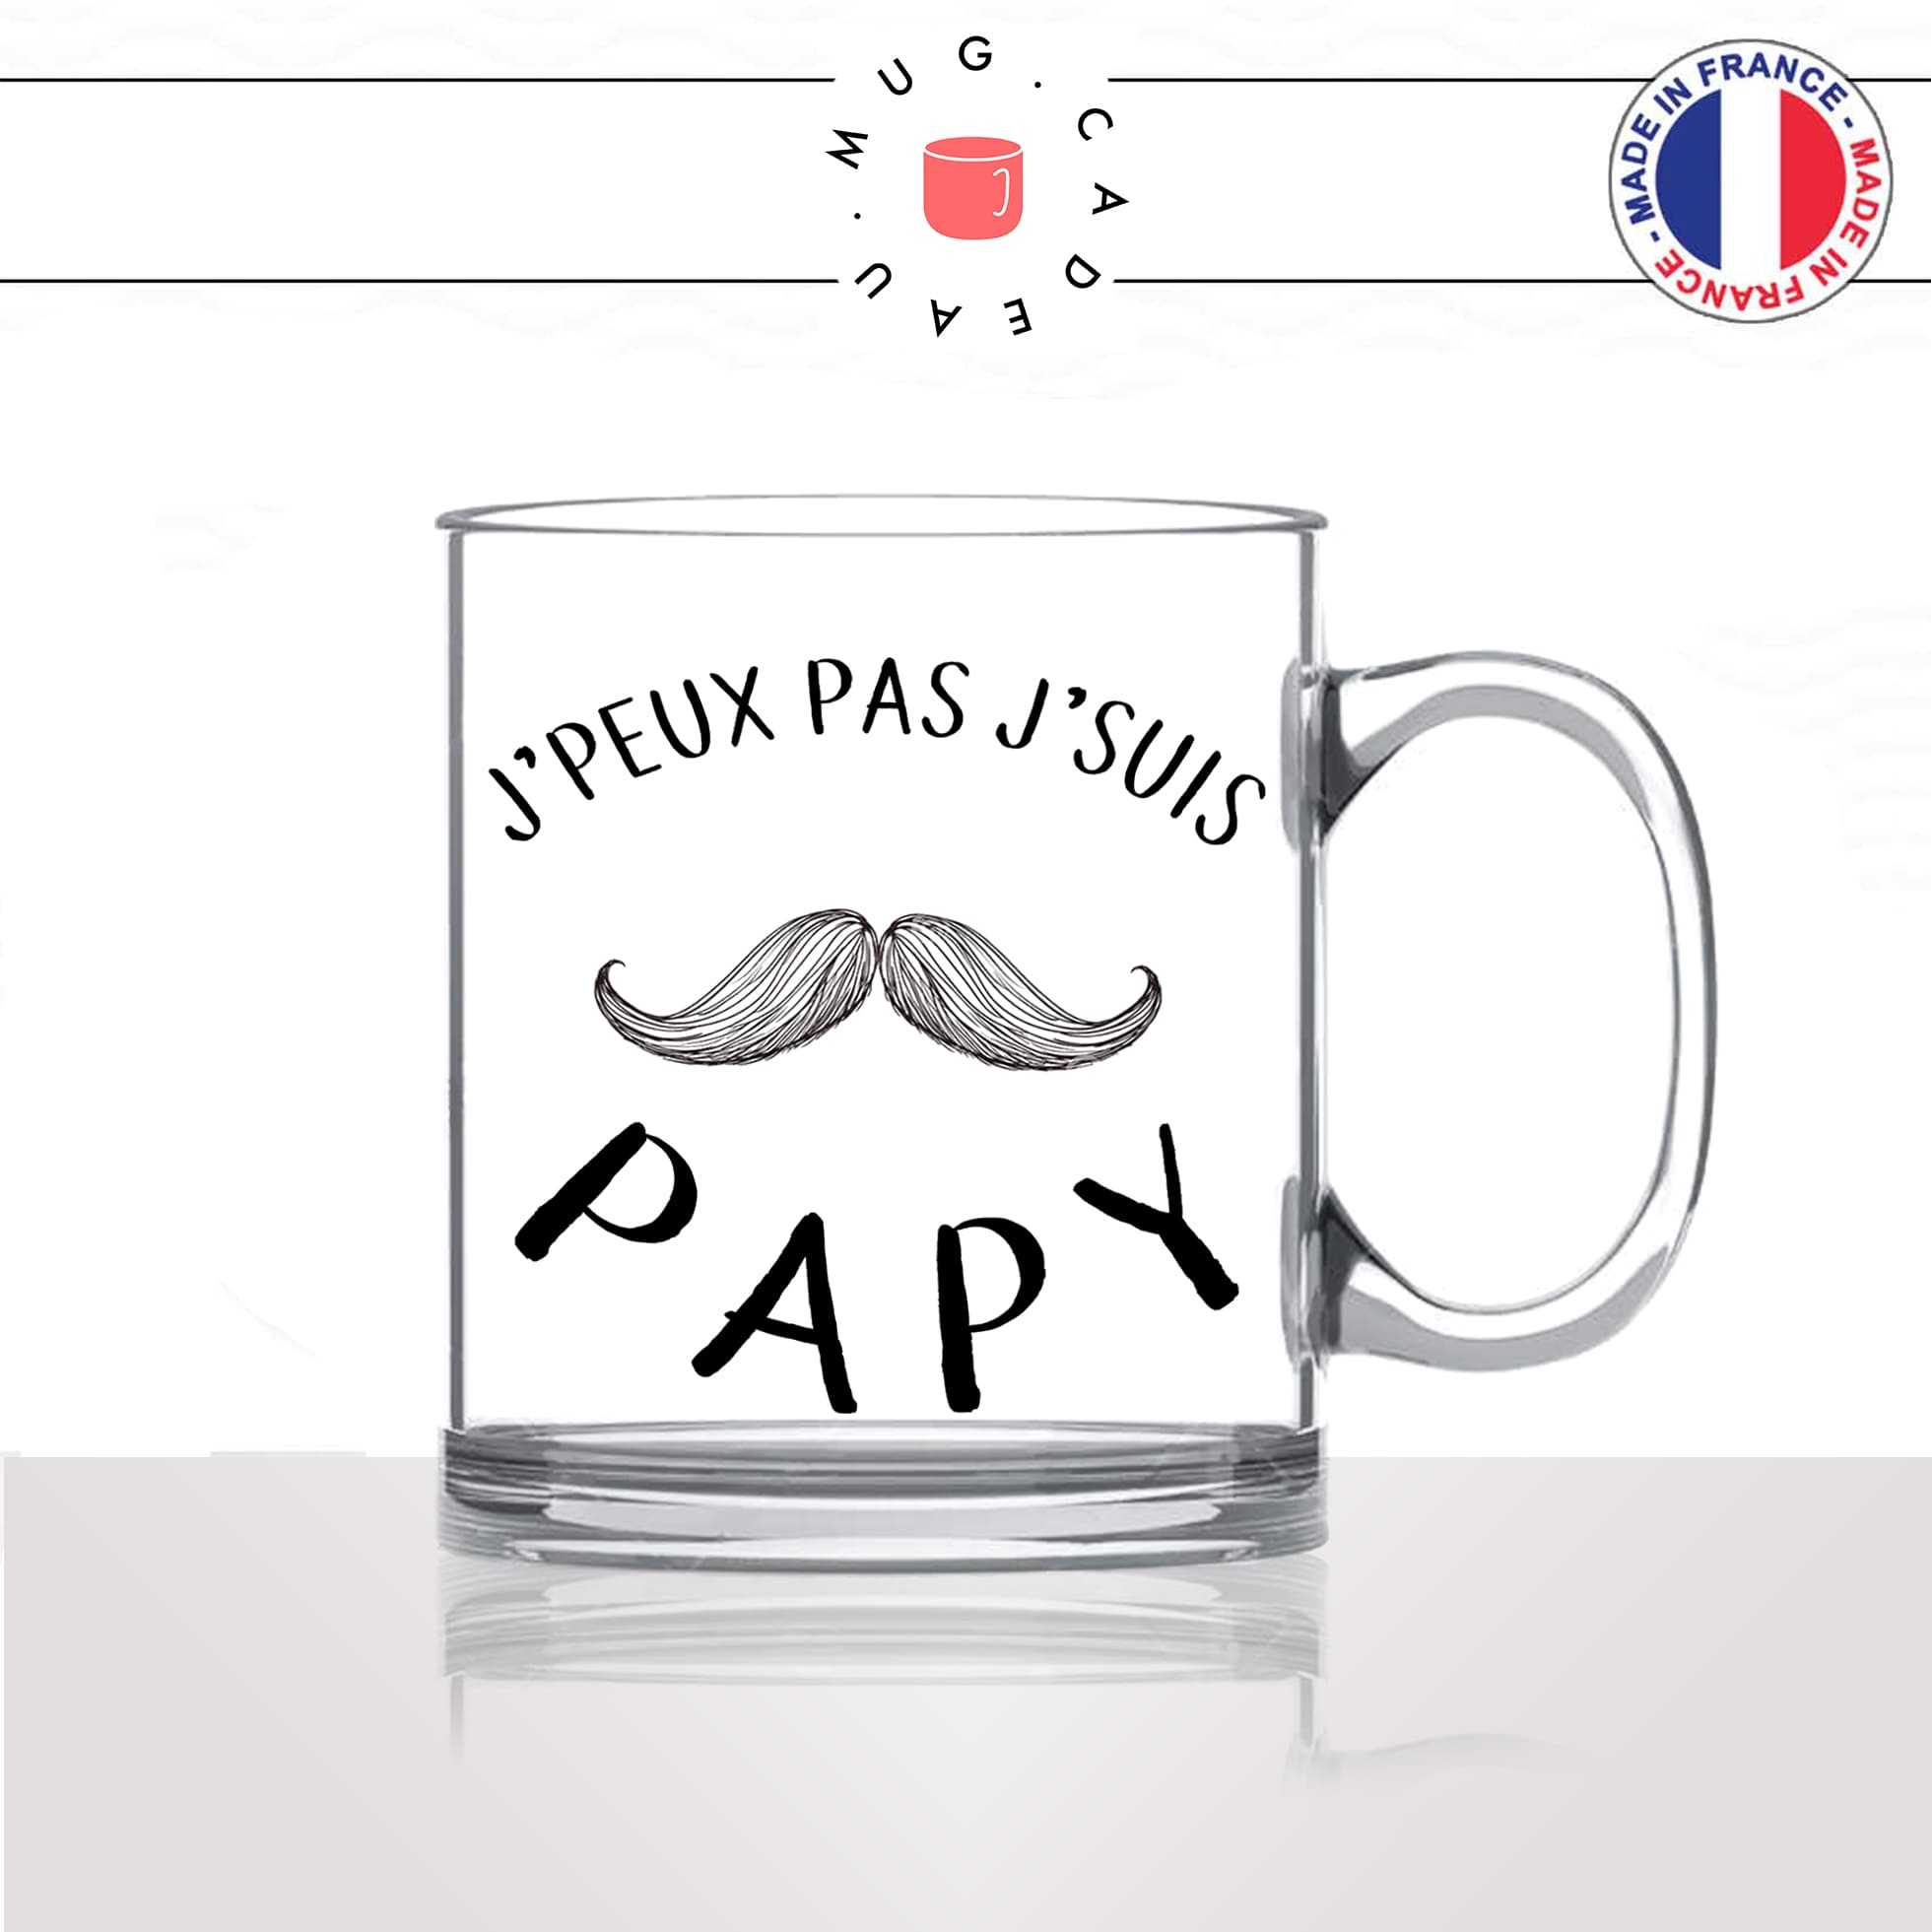 mug-tasse-en-verre-transparent-glass-jpeux-pas-jsuis-papy-papi-grand-pere-naissance-moustache-humour-stylé-idée-cadeau-fun-cool-café-thé2